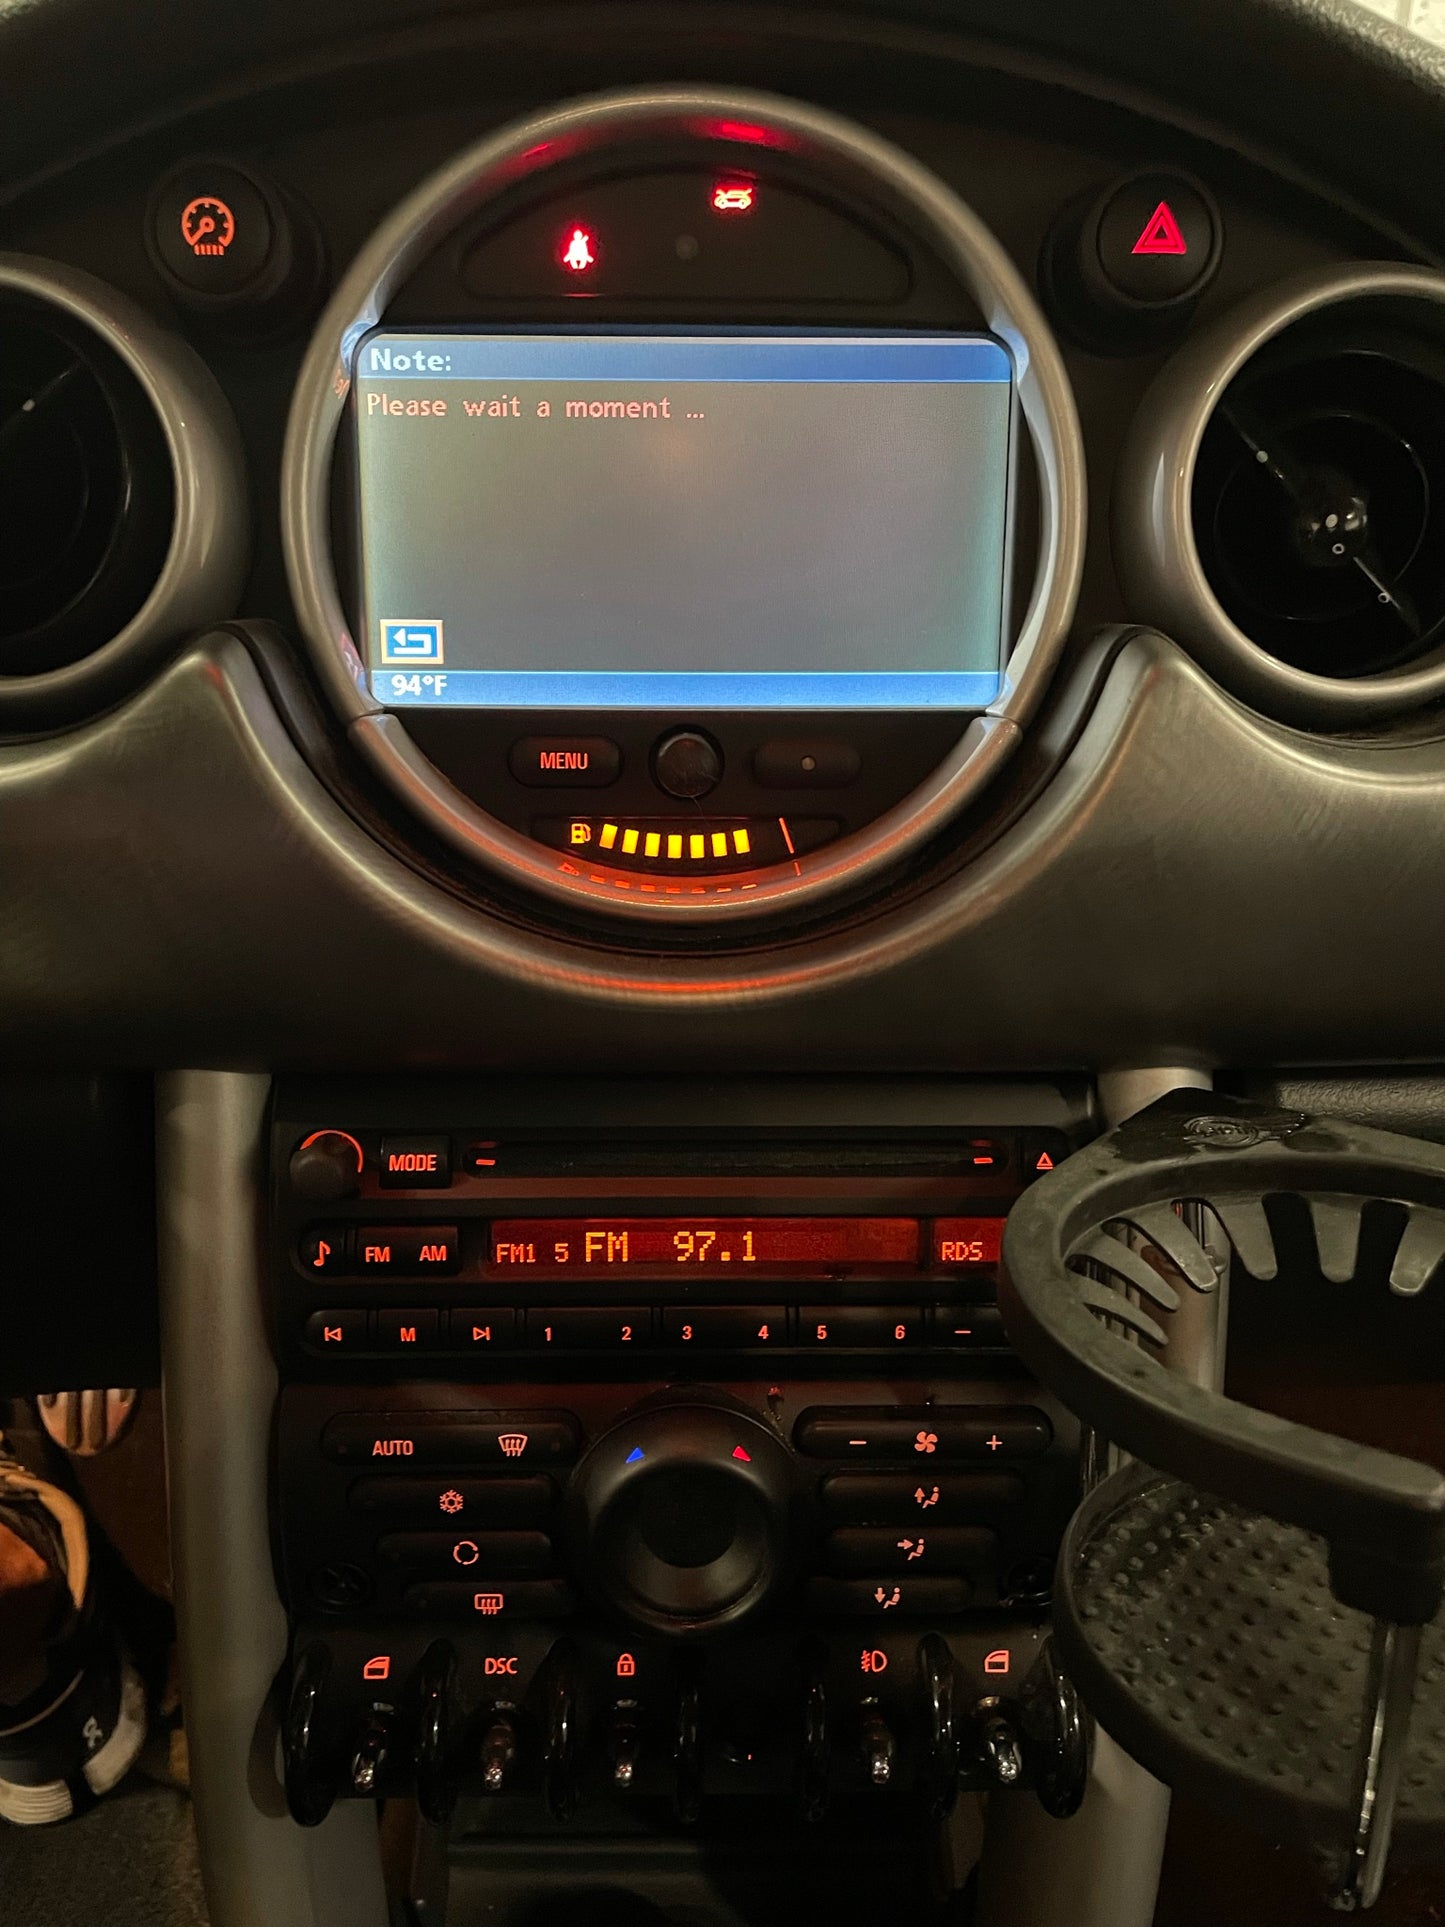 2005 MINI Cooper Hatchback S, New Parts Car (September 2021) Stk # 257